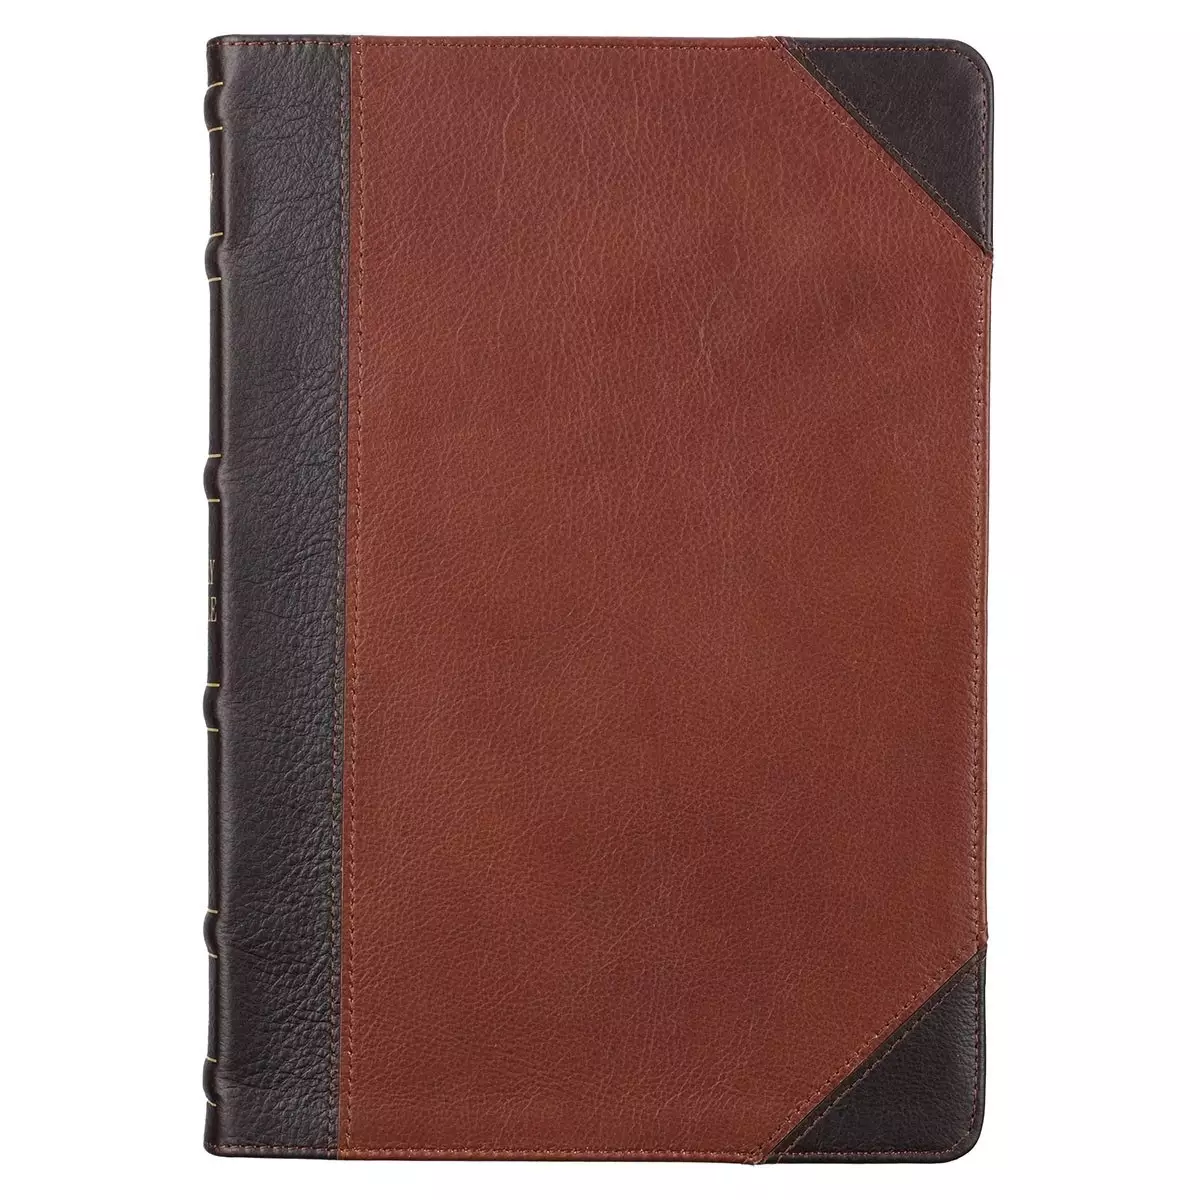 KJV Bible Thinline LP Full-grain Leather, Mahogany/Saddle Tan